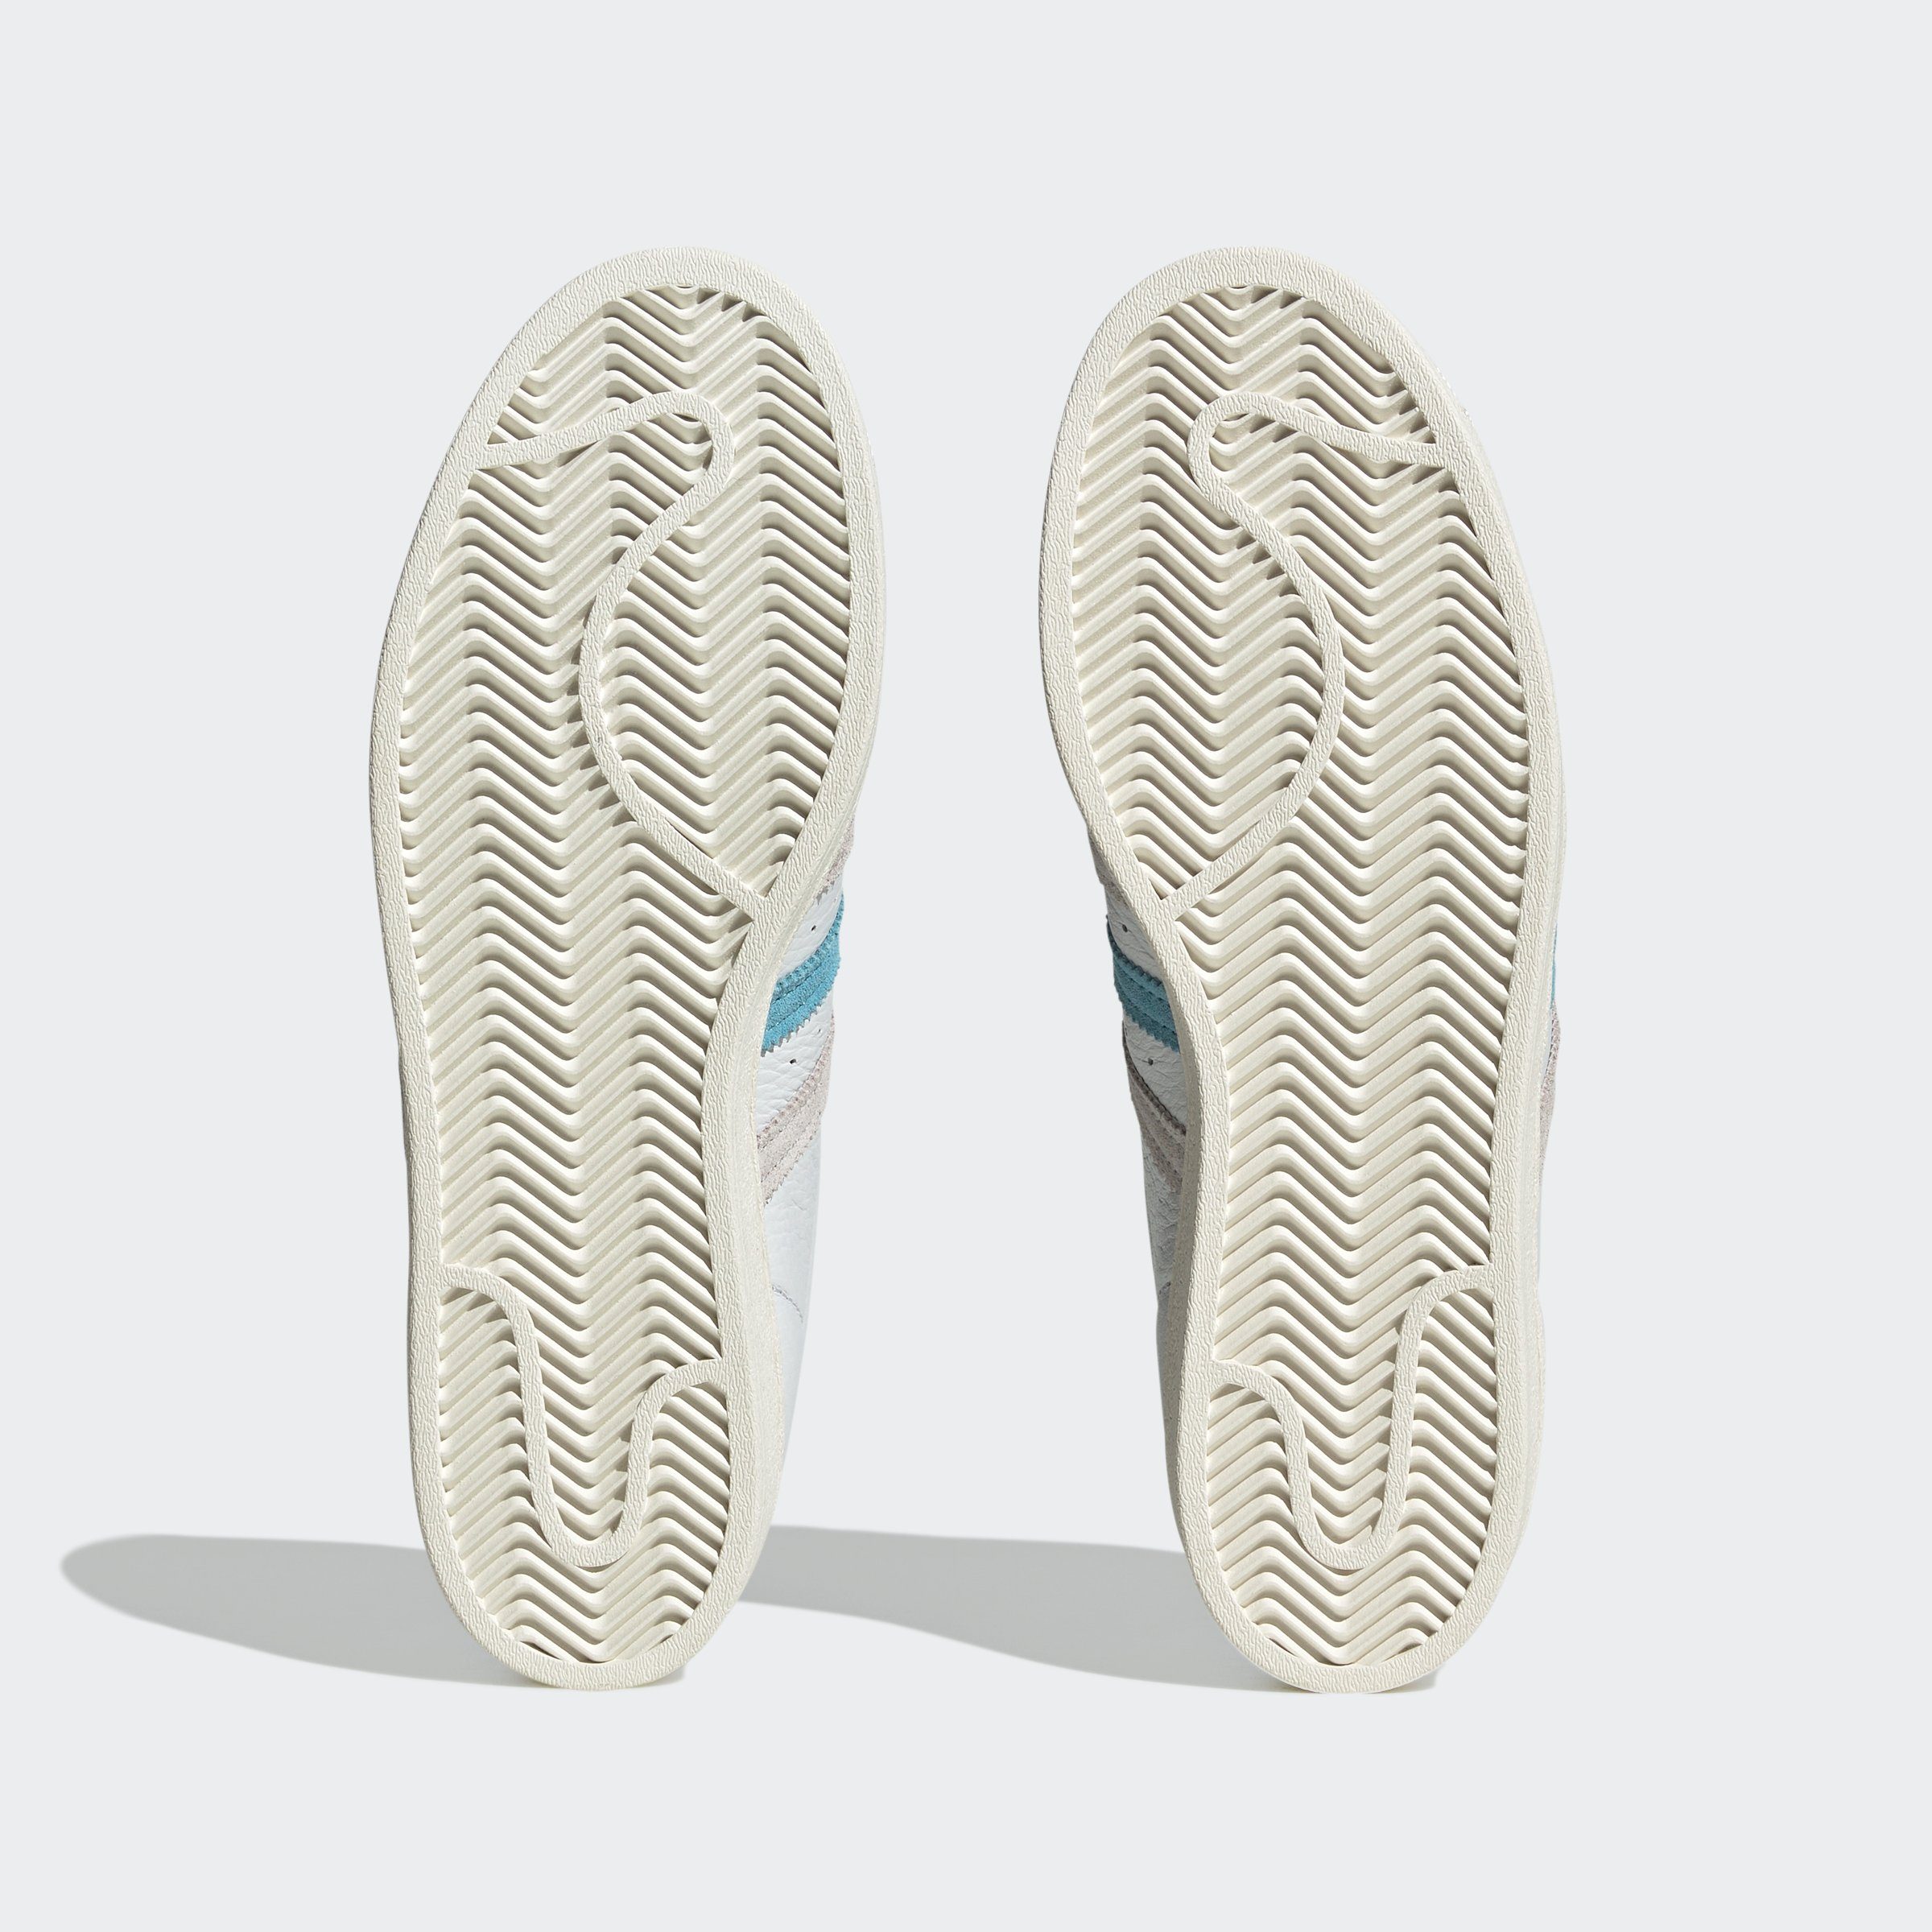 adidas Originals / Sneaker Cream White Grey SUPERSTAR One Blue / Preloved